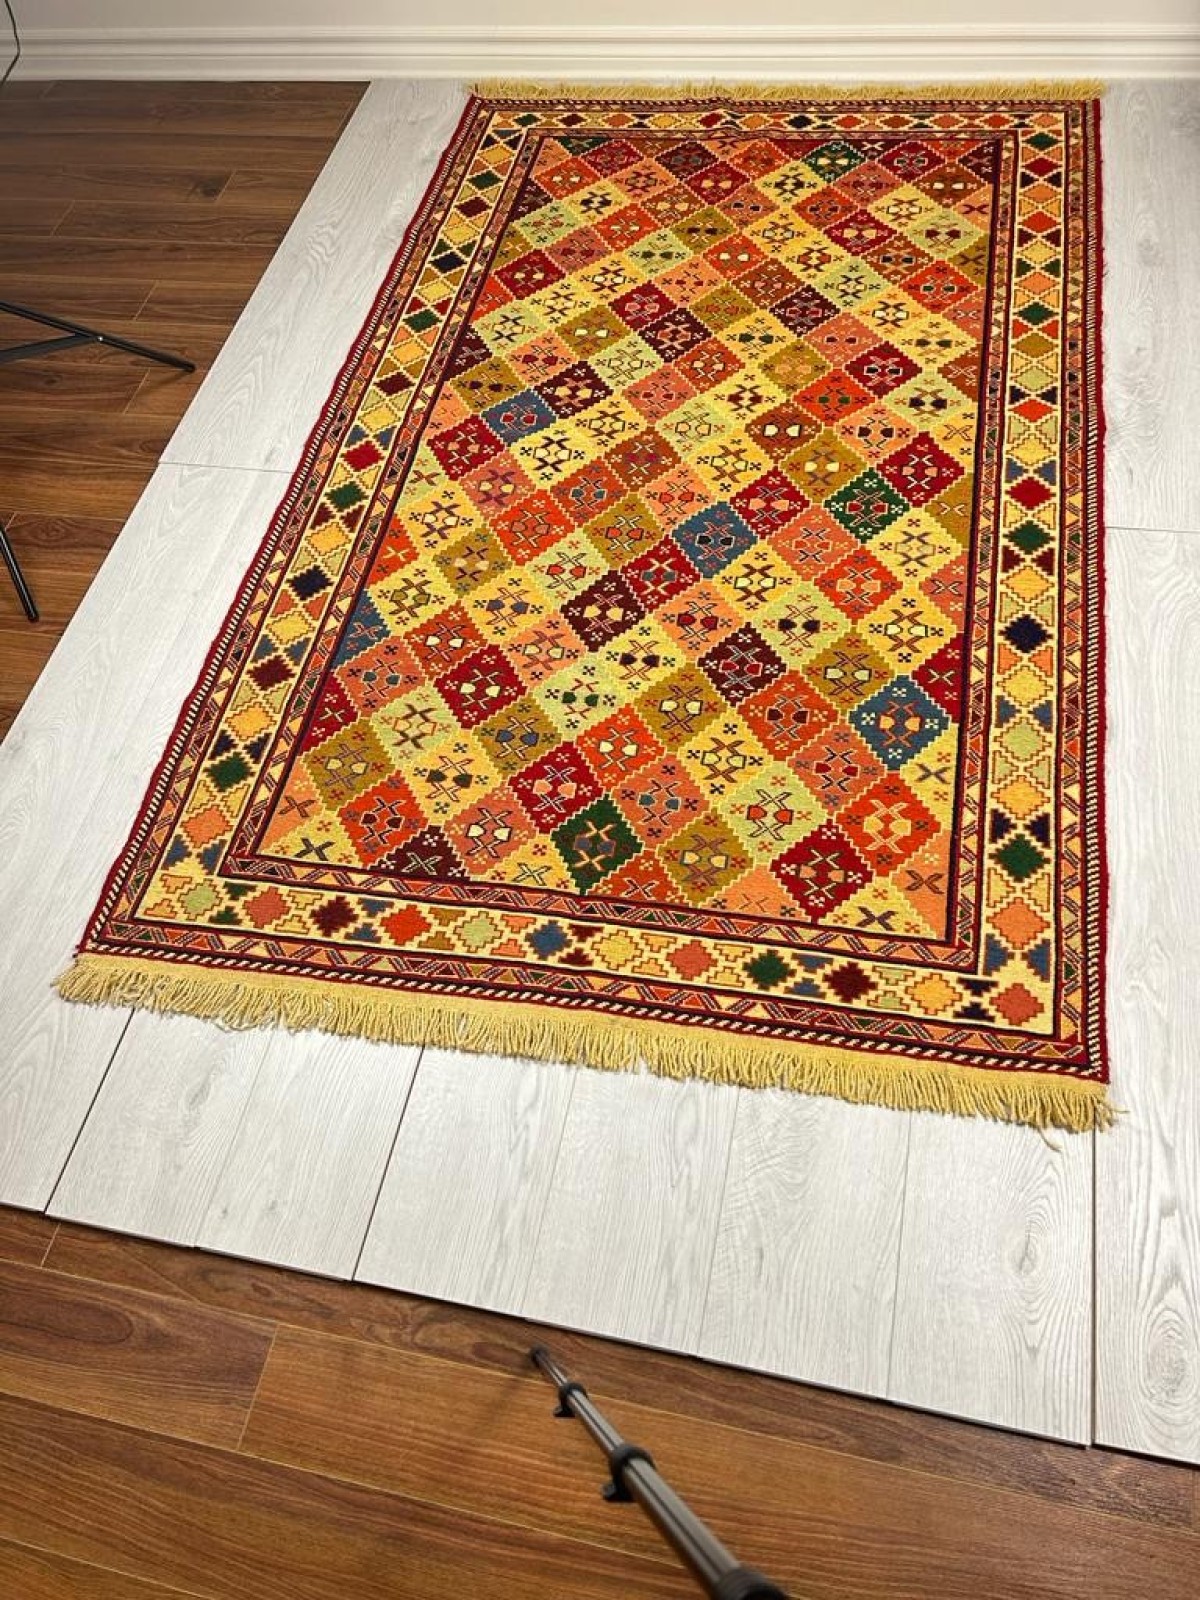 Royal - Hand woven, flatweave kilim rug